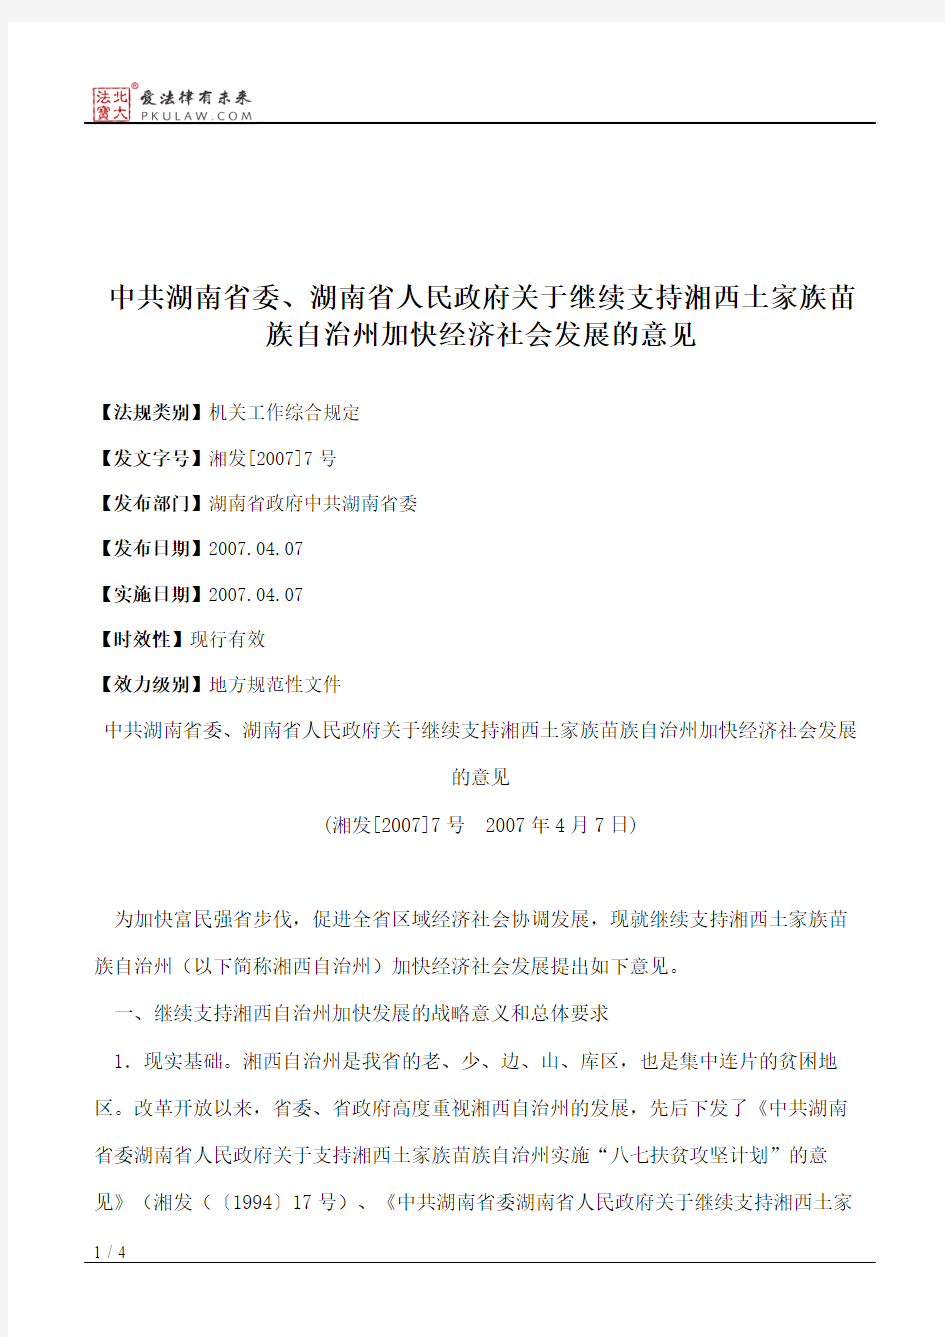 中共湖南省委、湖南省人民政府关于继续支持湘西土家族苗族自治州